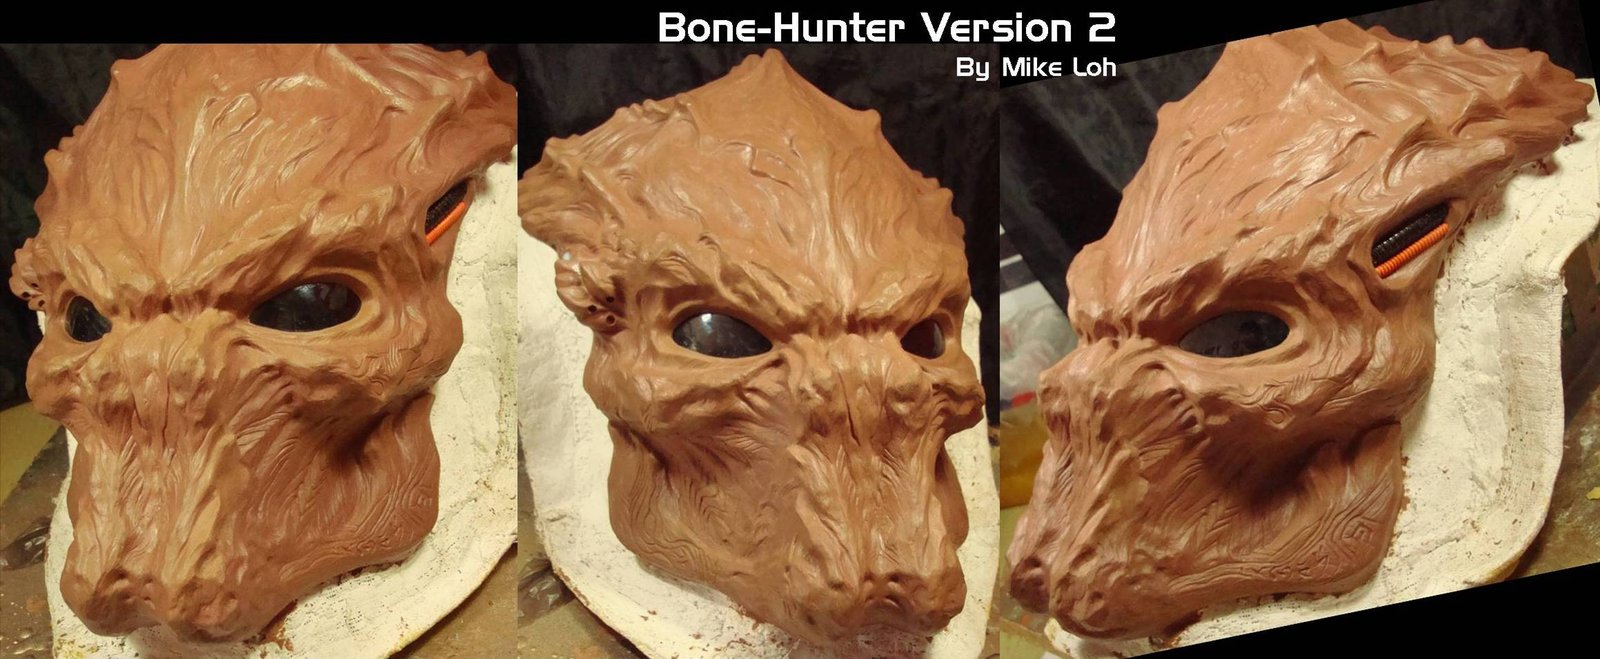 bonehunter_v2_details_by_michaelloh-d491cqk.jpg